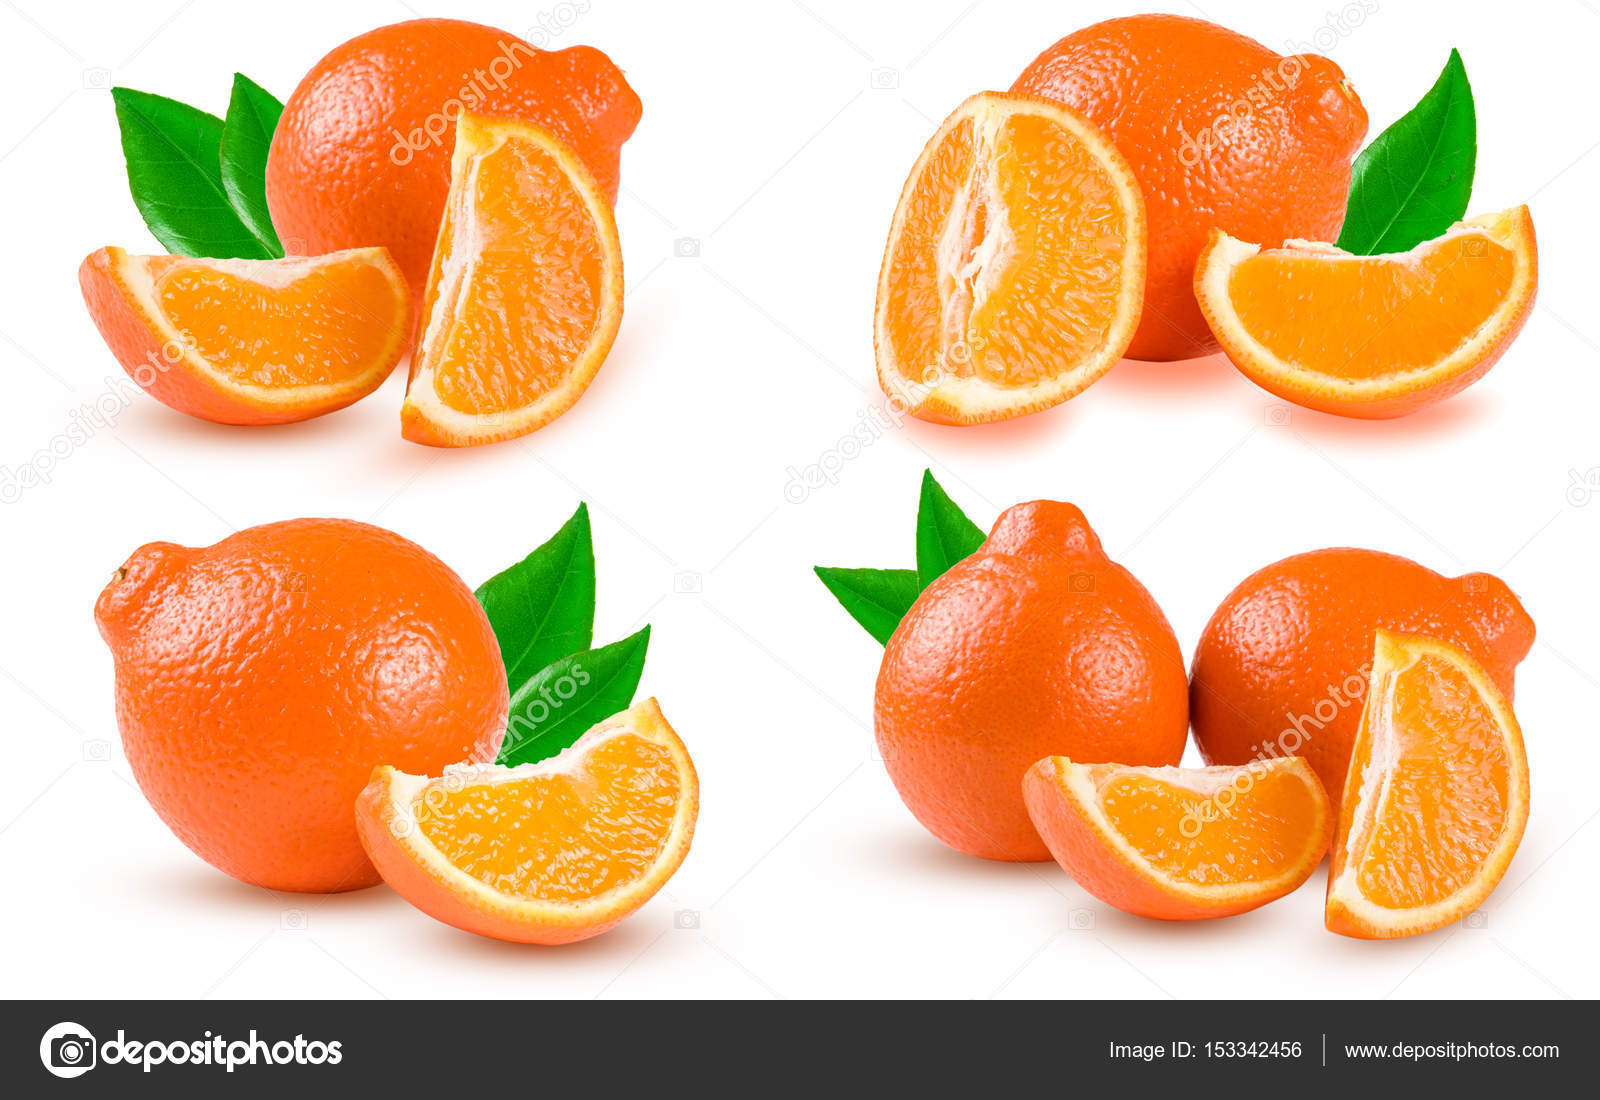 Orange Tangerine Or Mineola With Slices Isolated On White Background